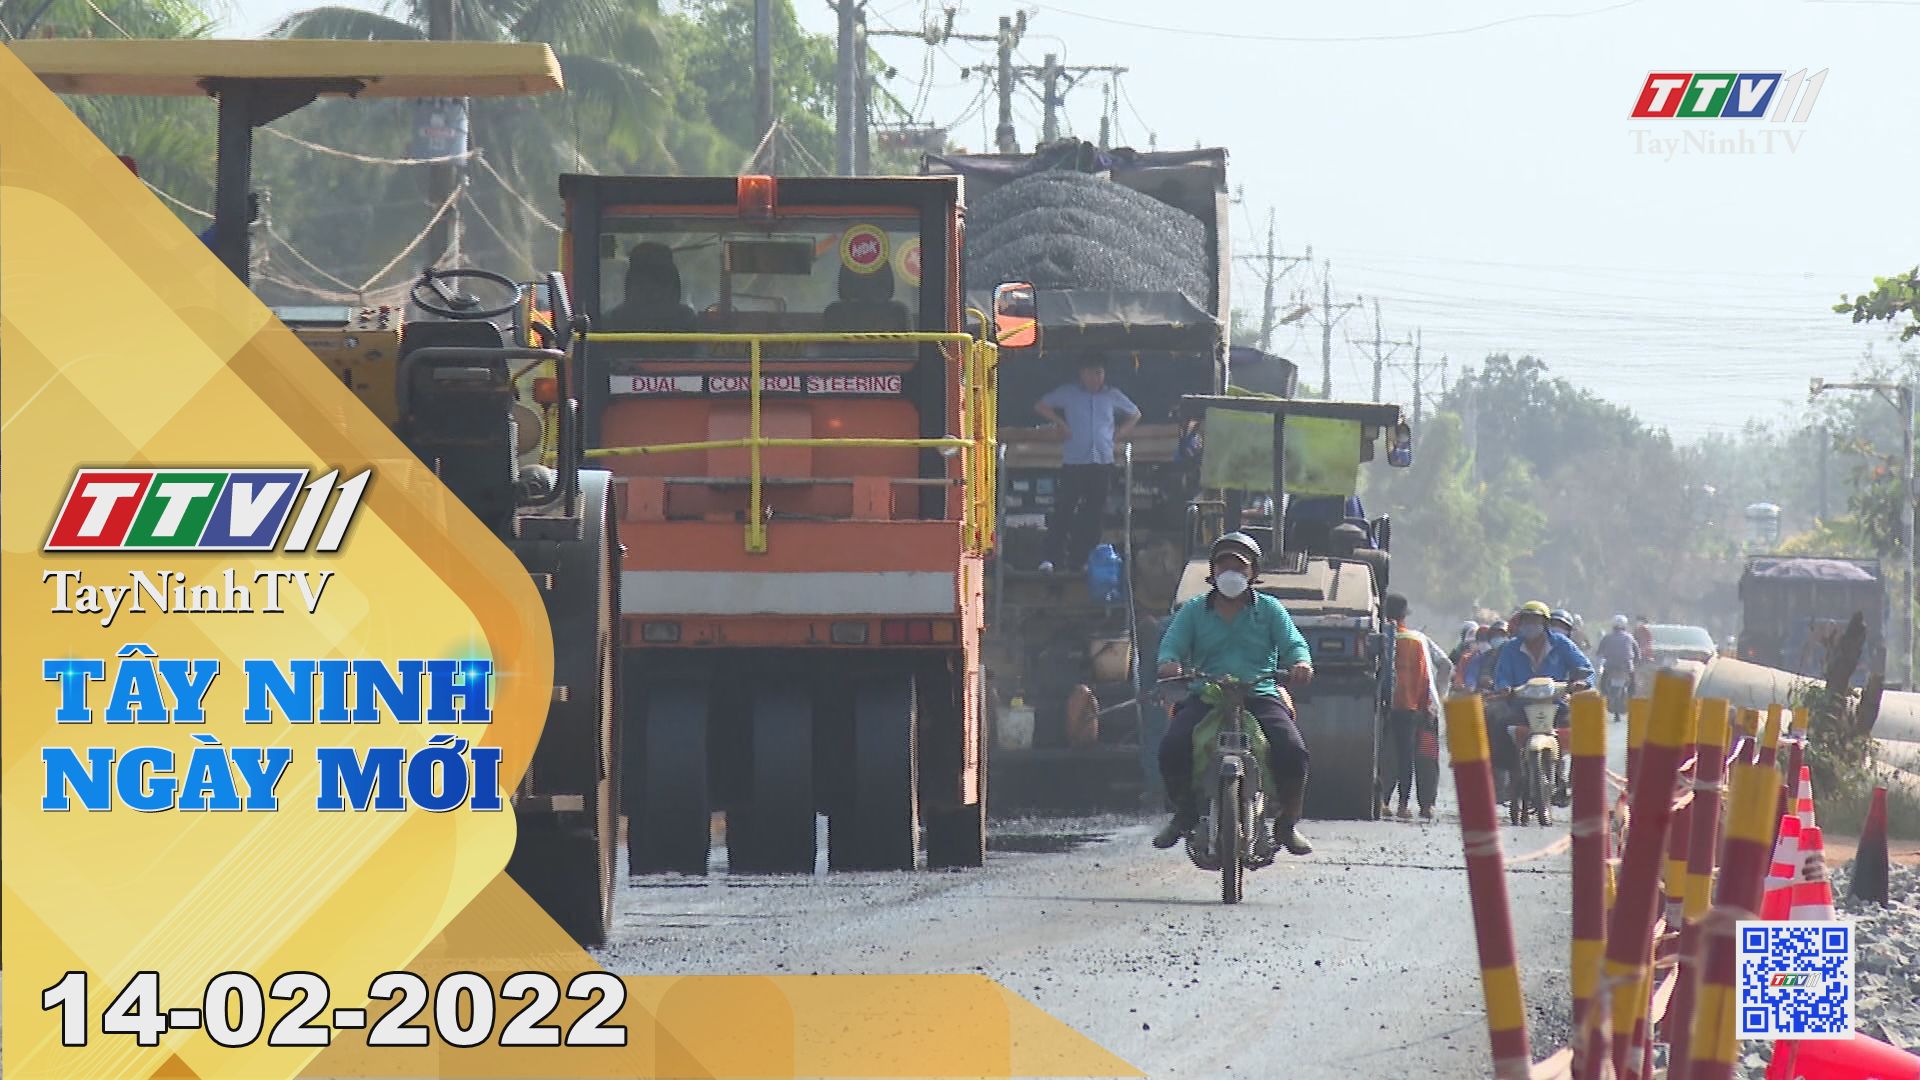 Tây Ninh ngày mới 14-02-2022 | Tin tức hôm nay | TayNinhTV